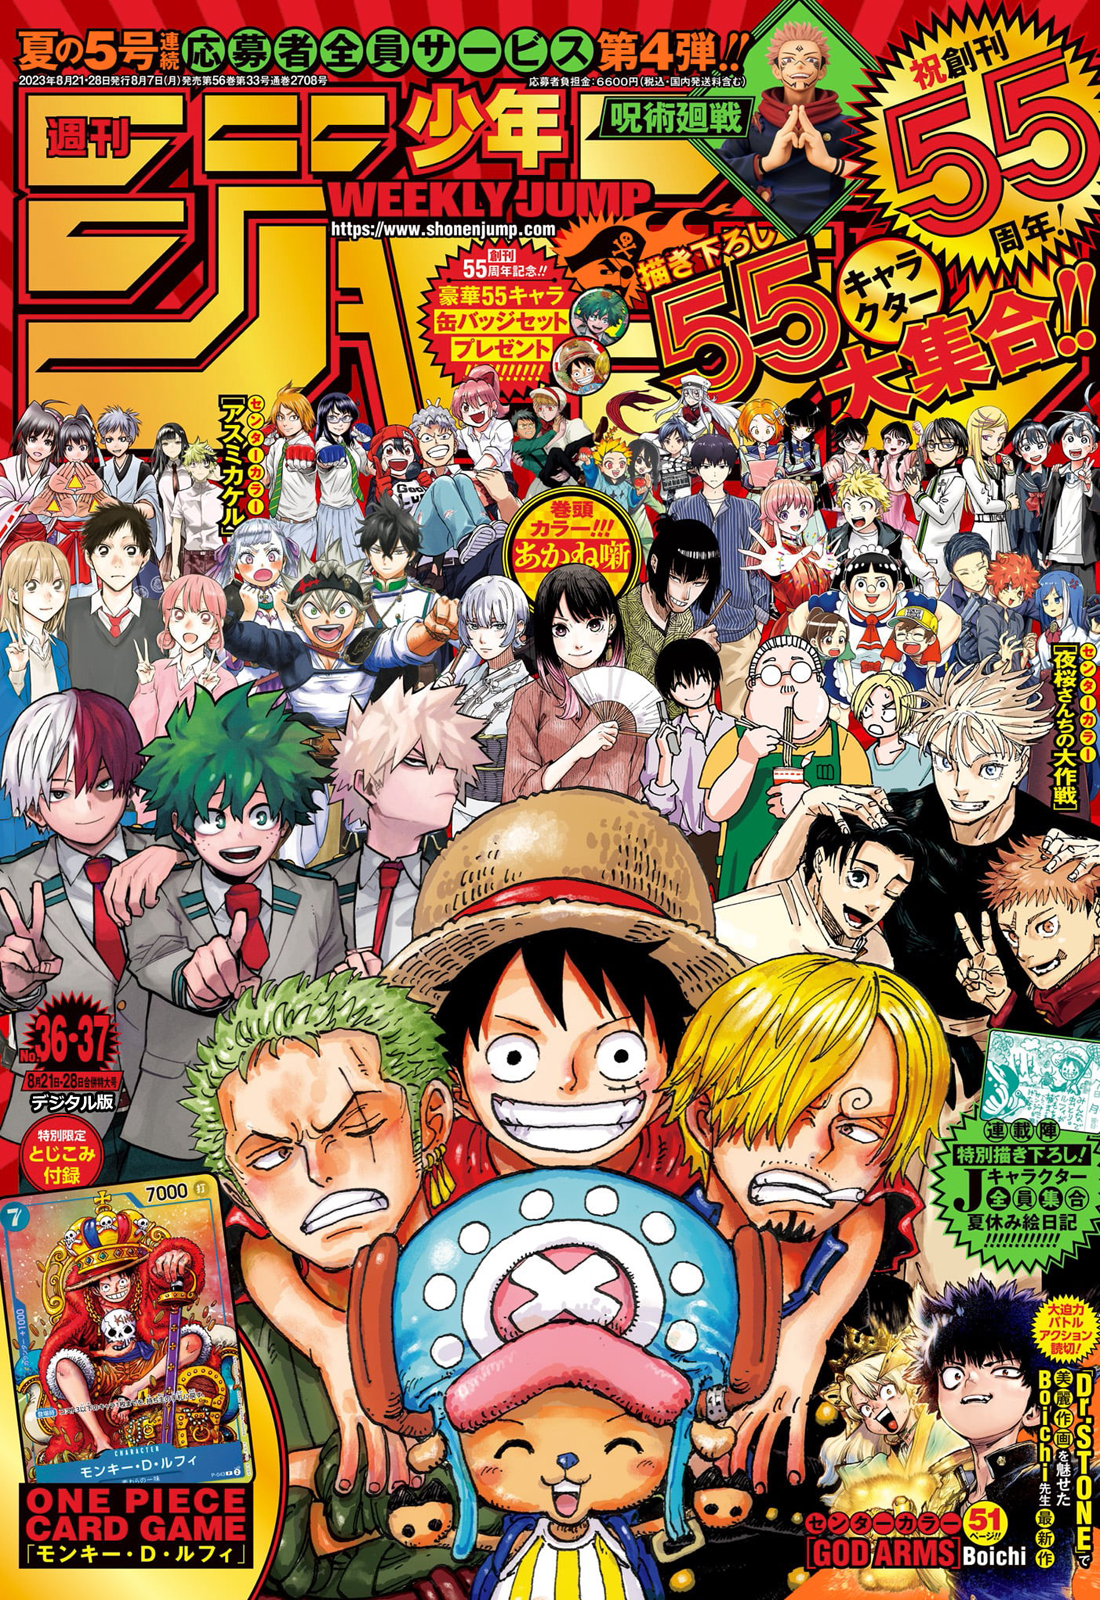 Capítulo 1012 de One Piece: Spoilers e data de lançamento - Manga